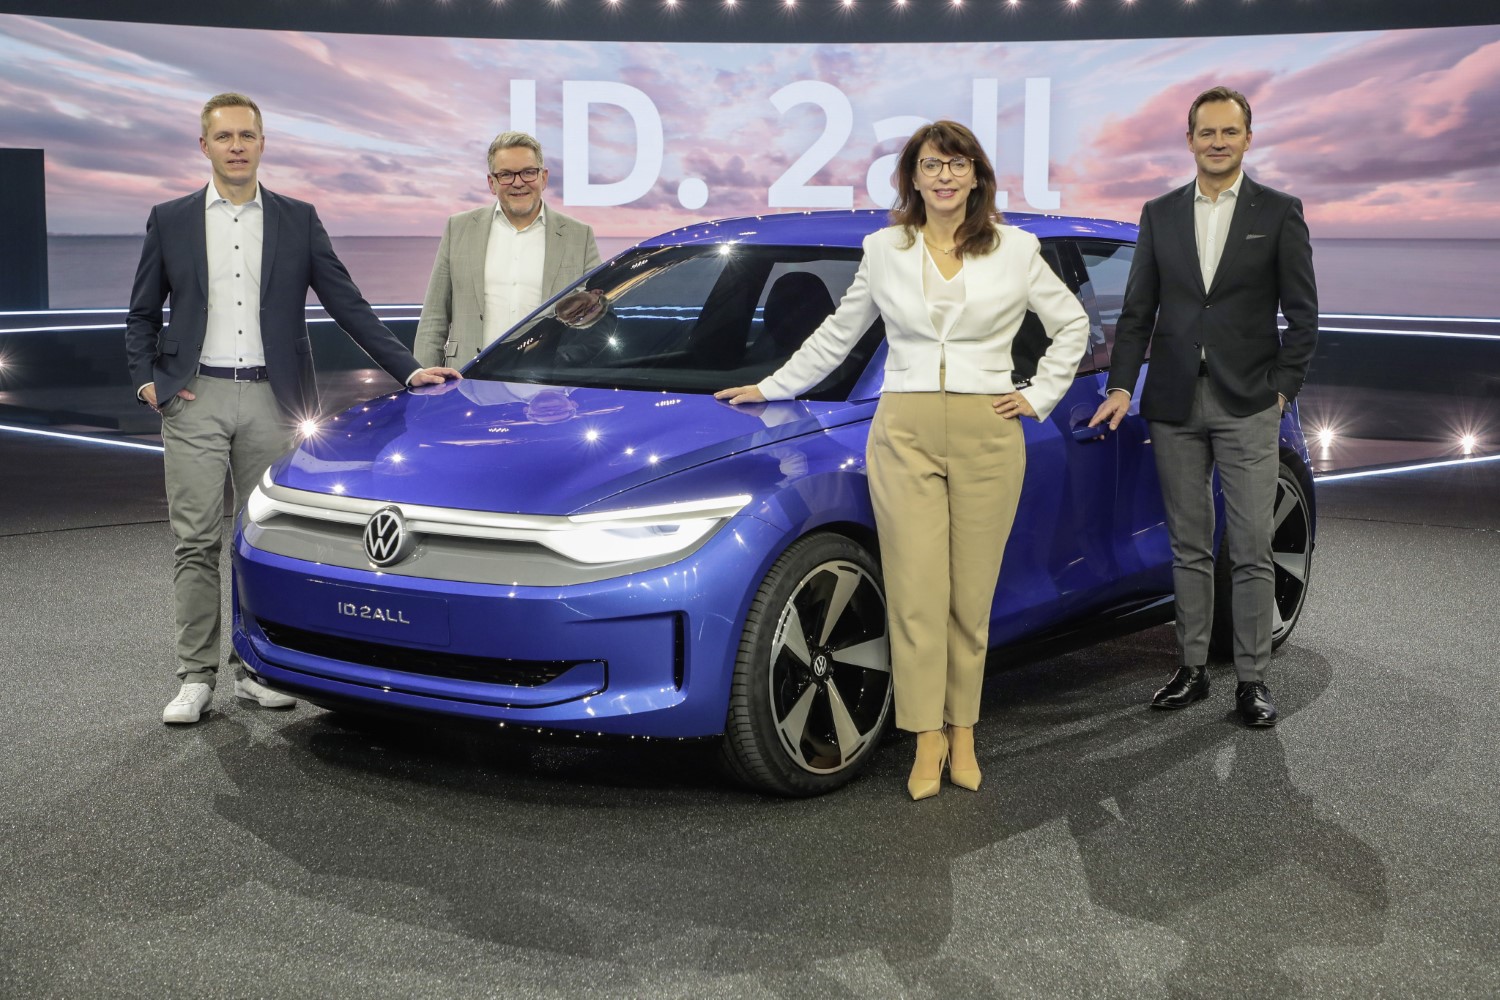 Електрична мобилност за 25.000 евра: Светска премиера за Volkswagen ID. 2all / ФОТО+ВИДЕО